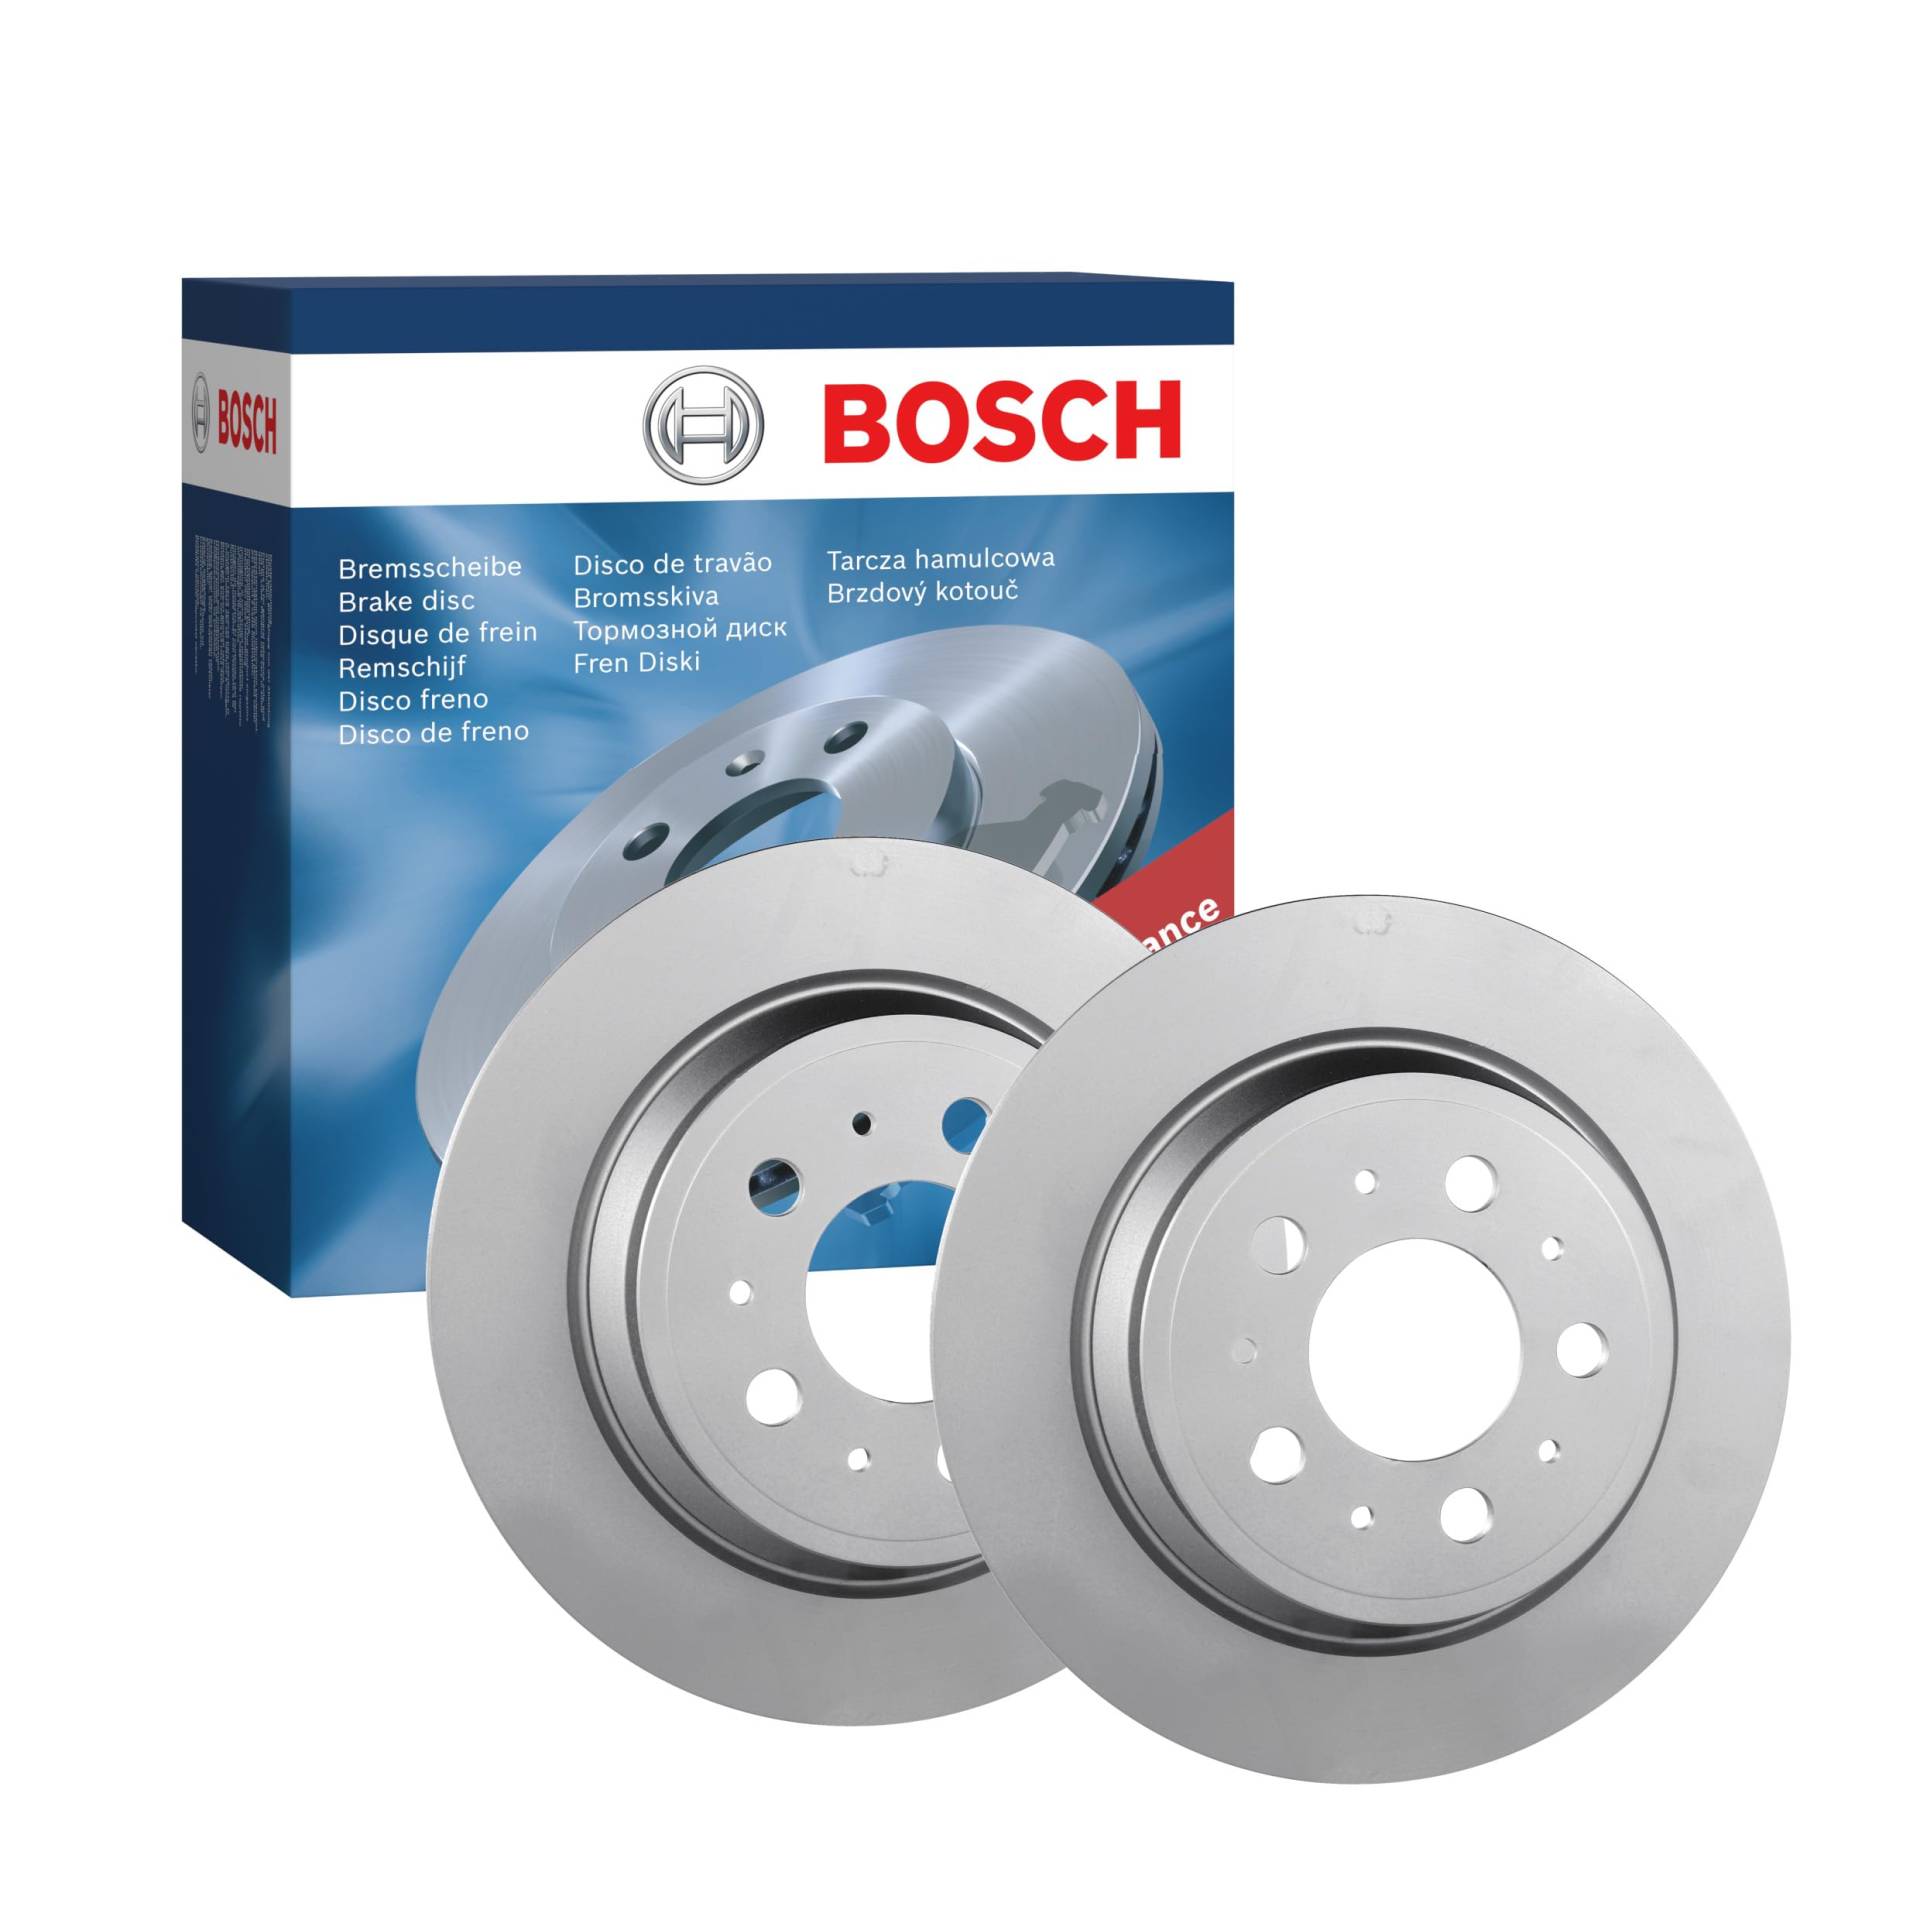 Bosch BD421 Bremsscheiben - Hinterachse - ECE-R90 Zertifizierung - zwei Bremsscheiben pro Set von Bosch Automotive